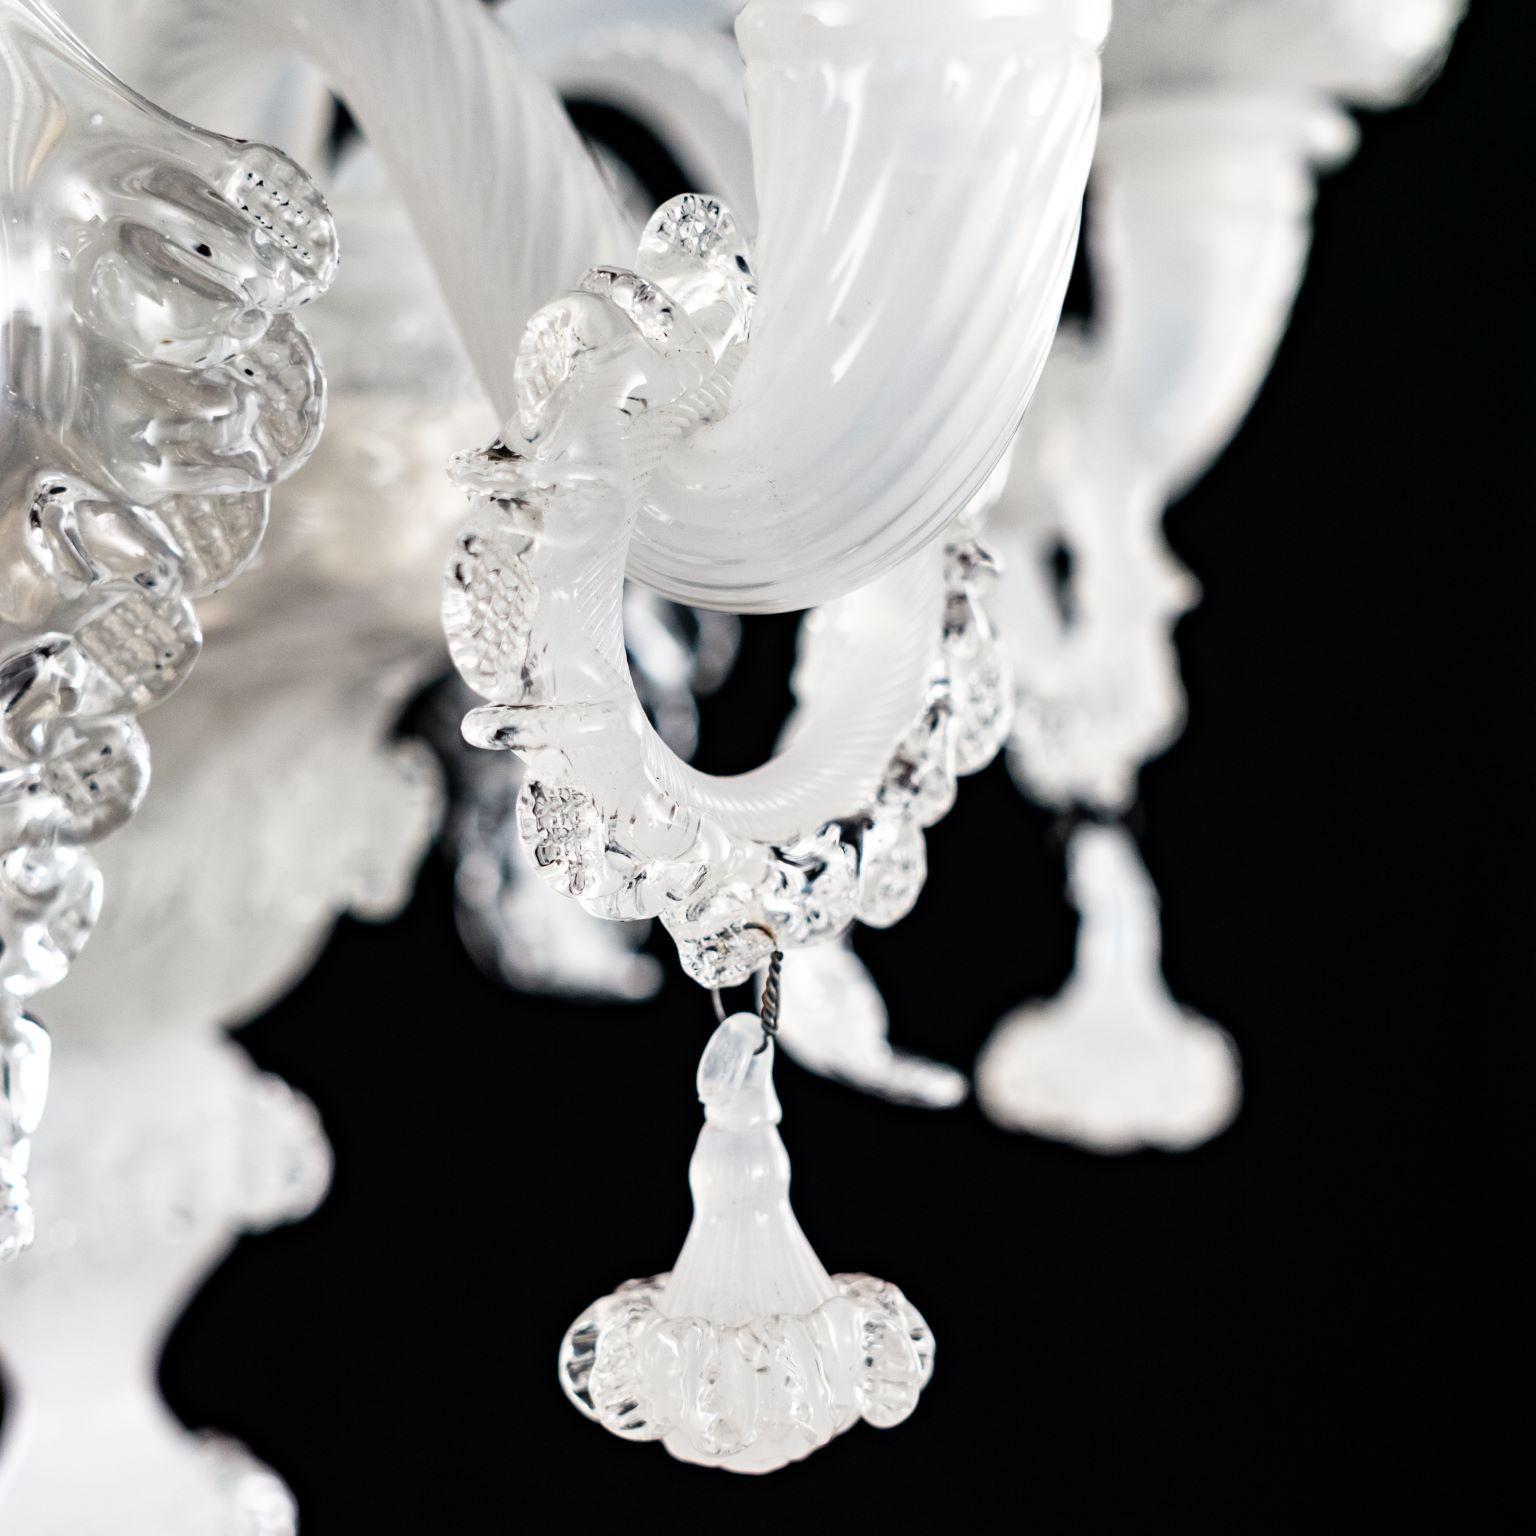 Das besondere Merkmal der Galliano Beleuchtungskollektion ist der Reichtum ihrer Dekorationen.
Dieser kunstvolle Glaslüster mit 5 Lichtern ist handgefertigt aus weißer Seide und Kristallglas.
Galliano ist unsere Hommage an die echte